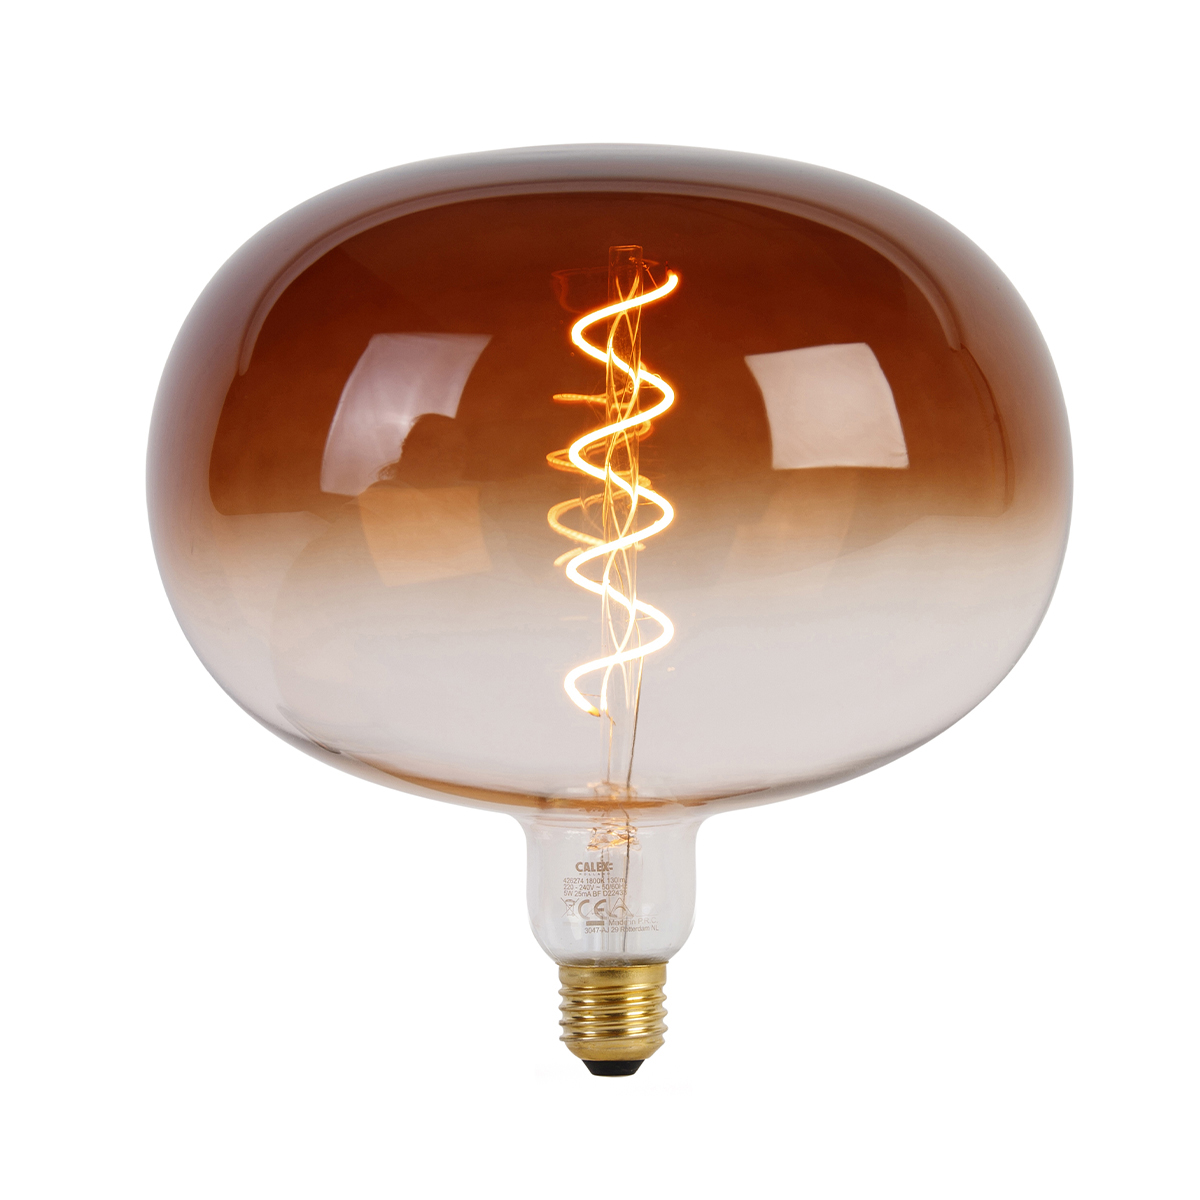 Calex E27 dimbare LED lamp Boden marron 5W 130 lm 1800K